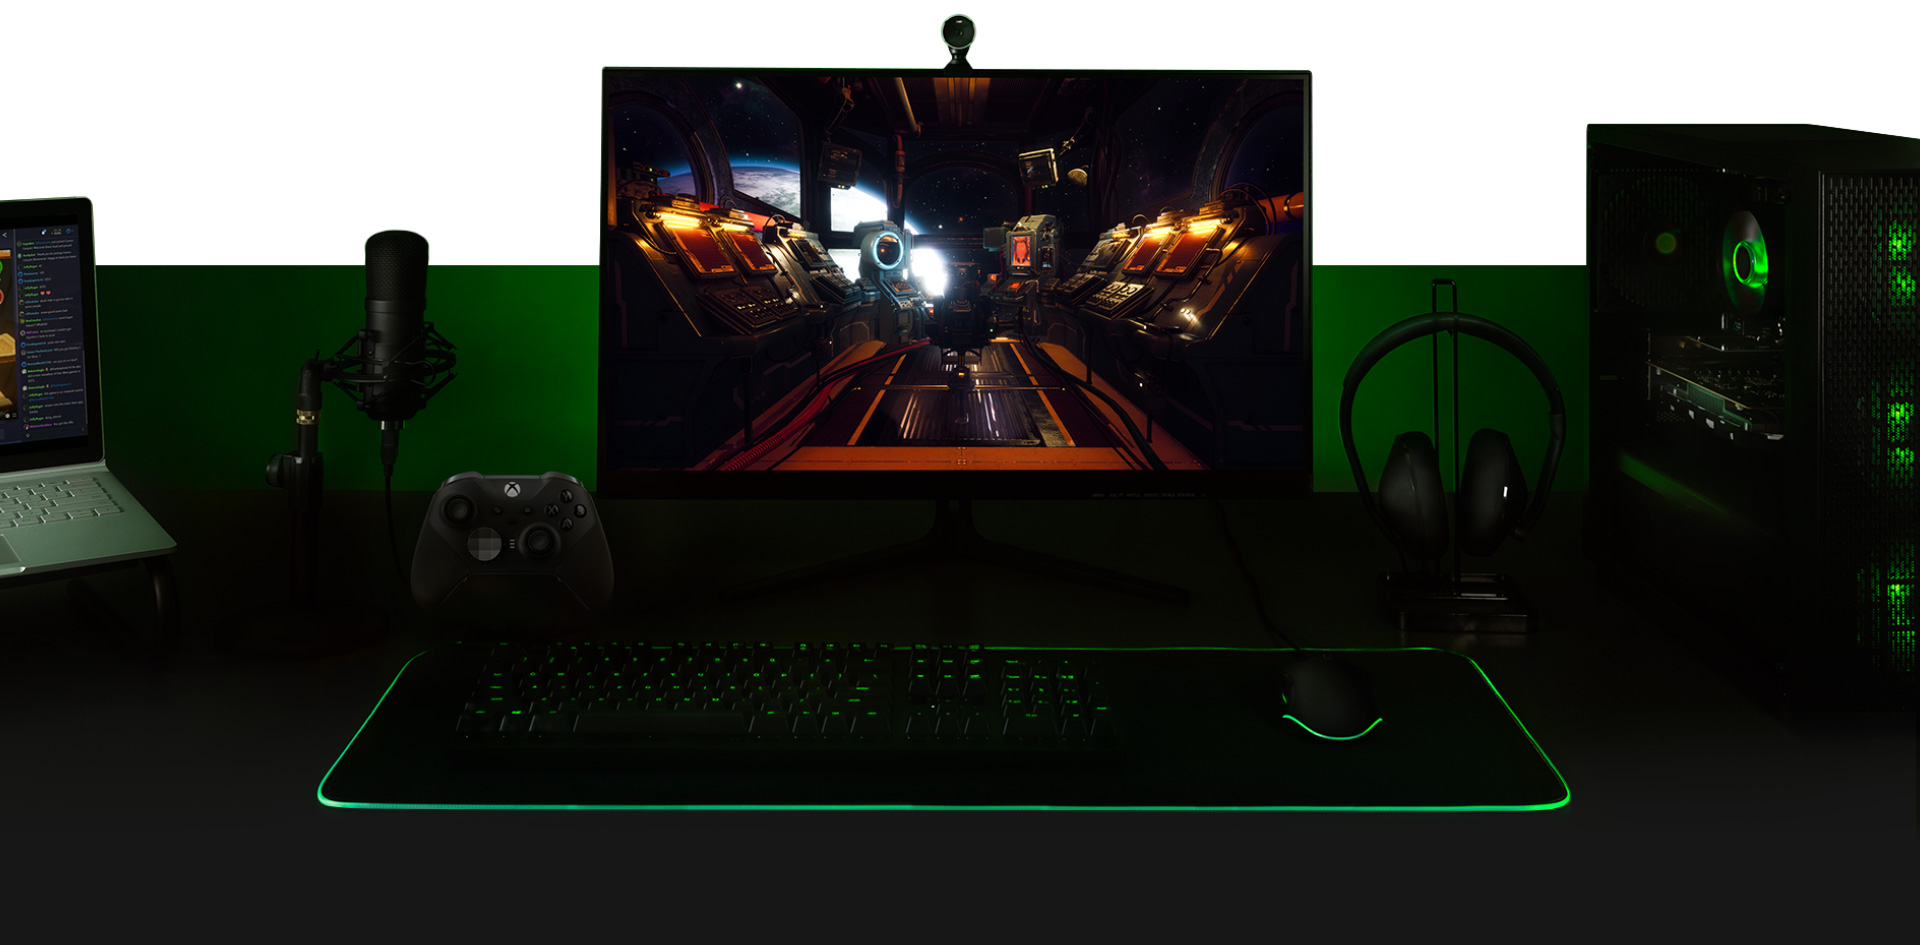 Desktop-PC mit Monitor und The Outer Worlds-Spielbildschirm, Tastatur, Xbox One Controller, Mikrofon und Laptop zusammen eingerichtet.